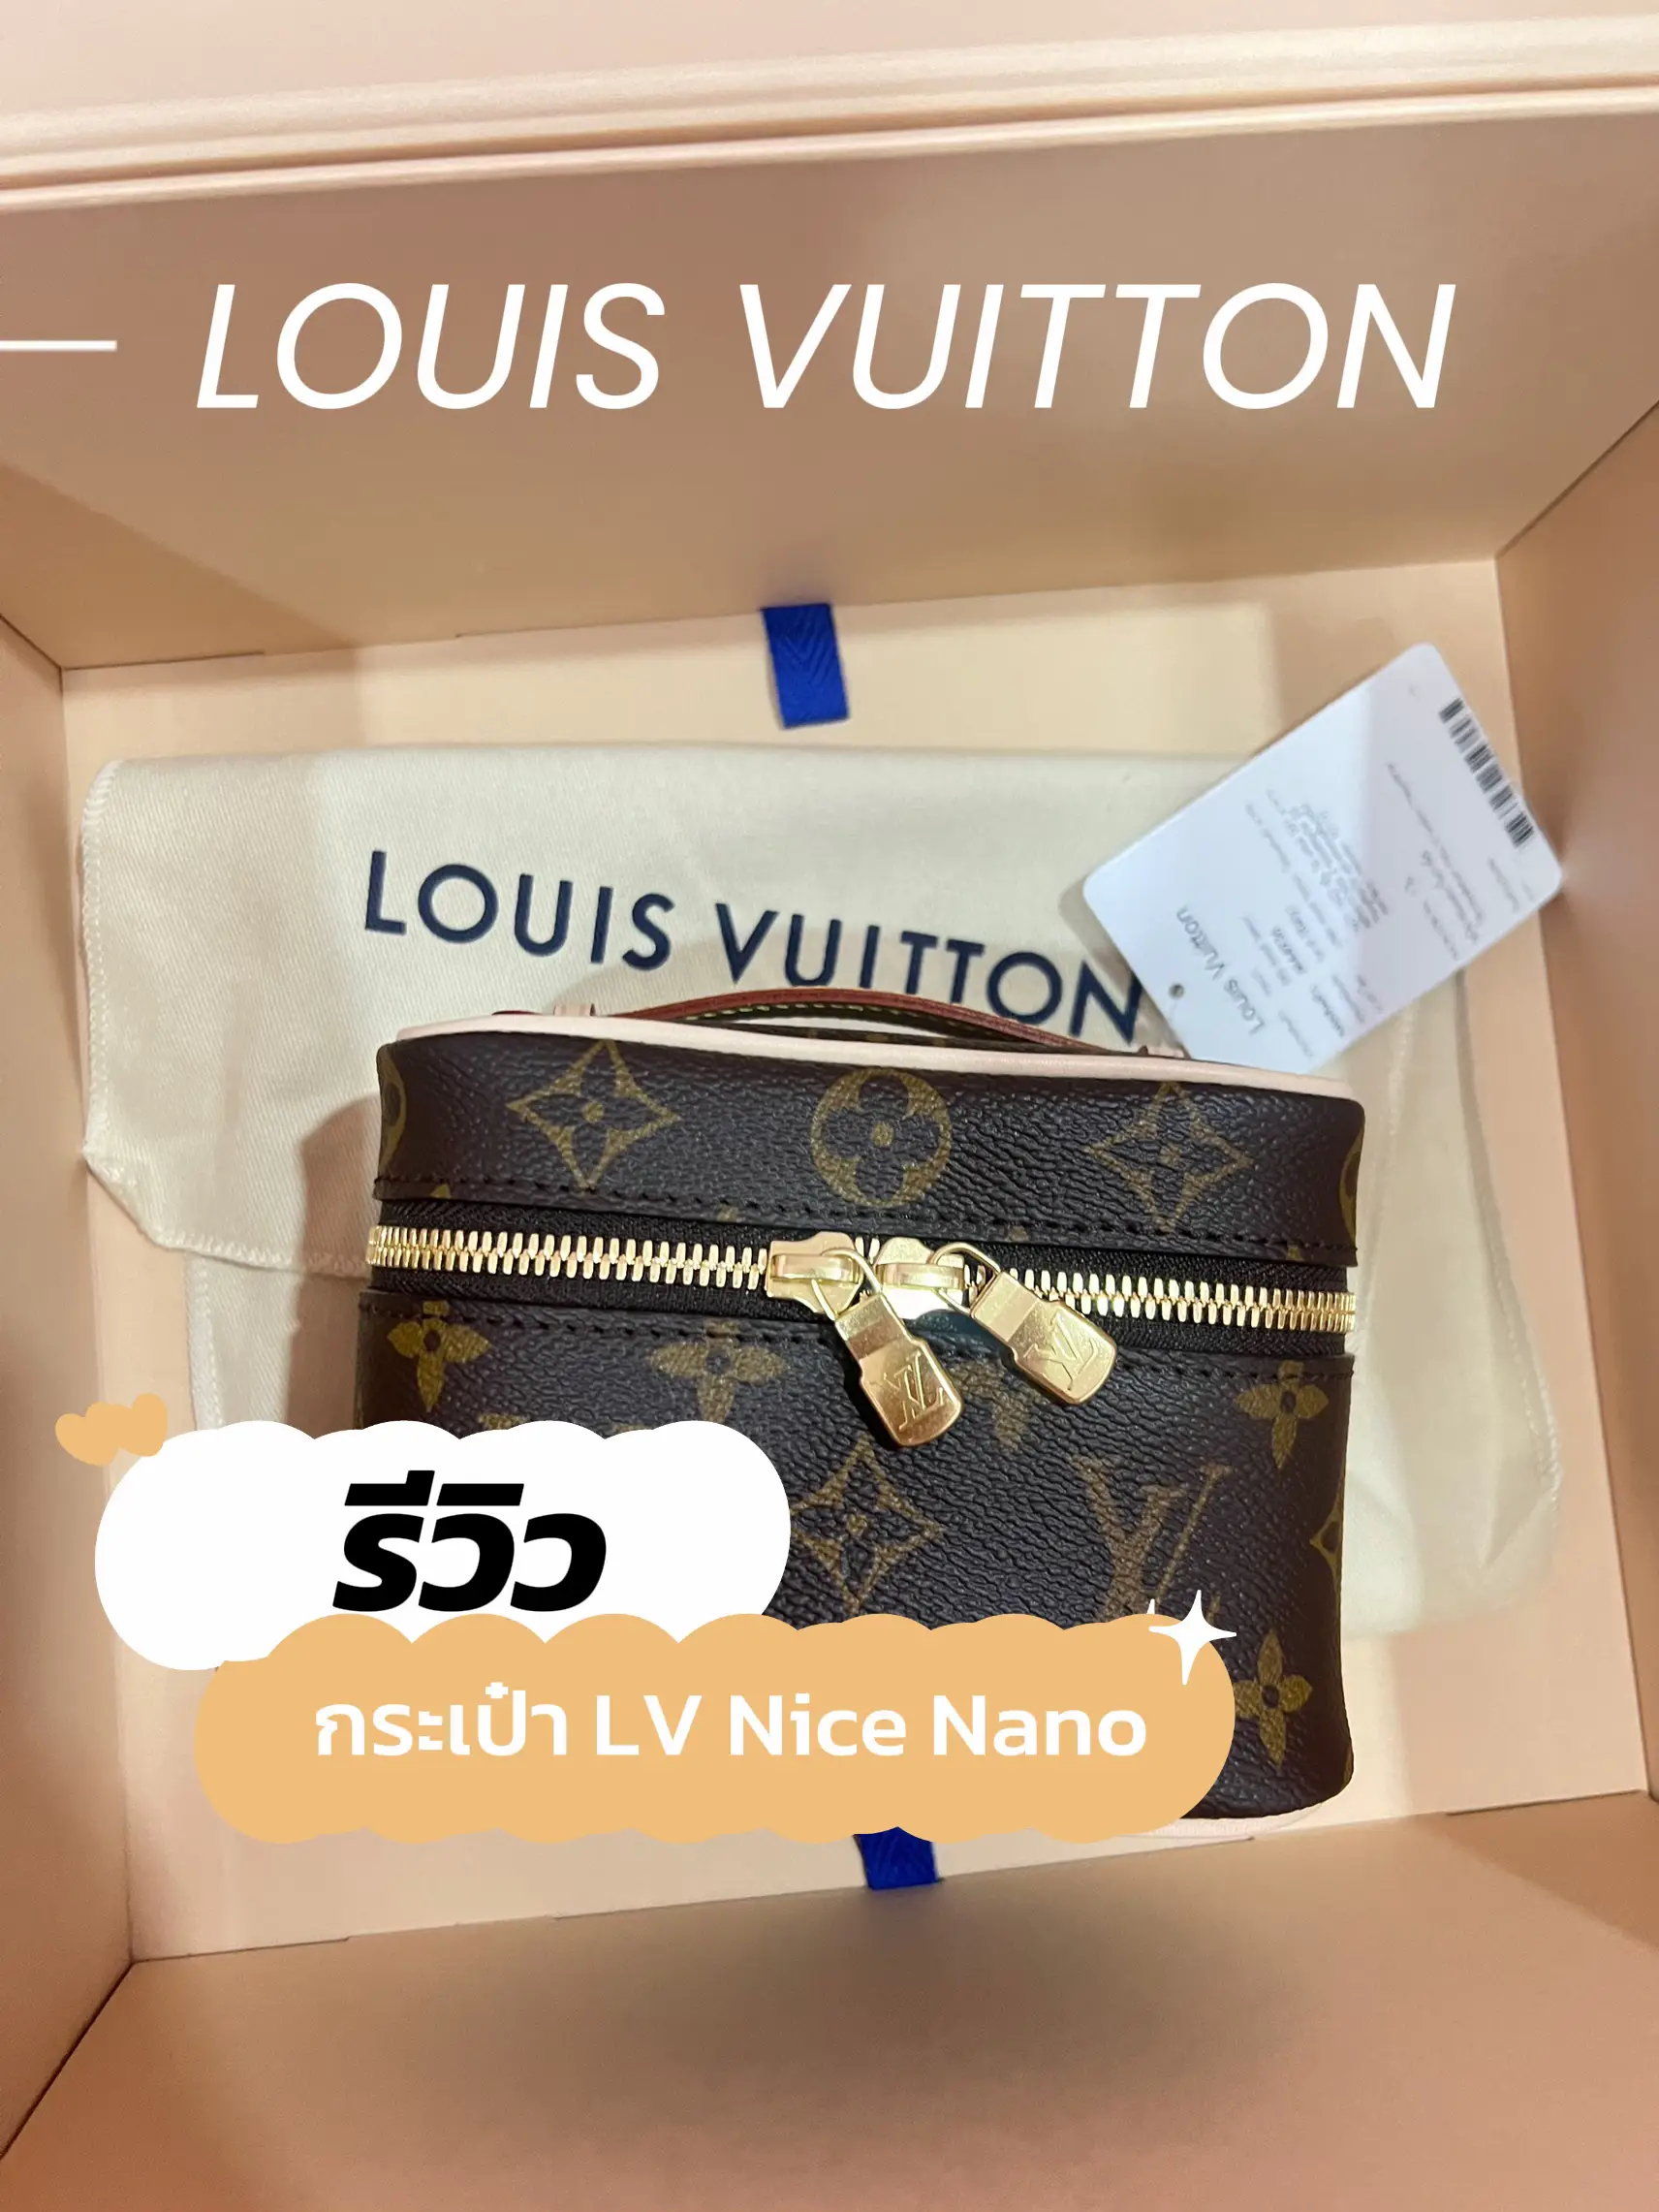 the cutest Louis Vuitton bag! LOUIS VUITTON NICE NANO UNBOXING